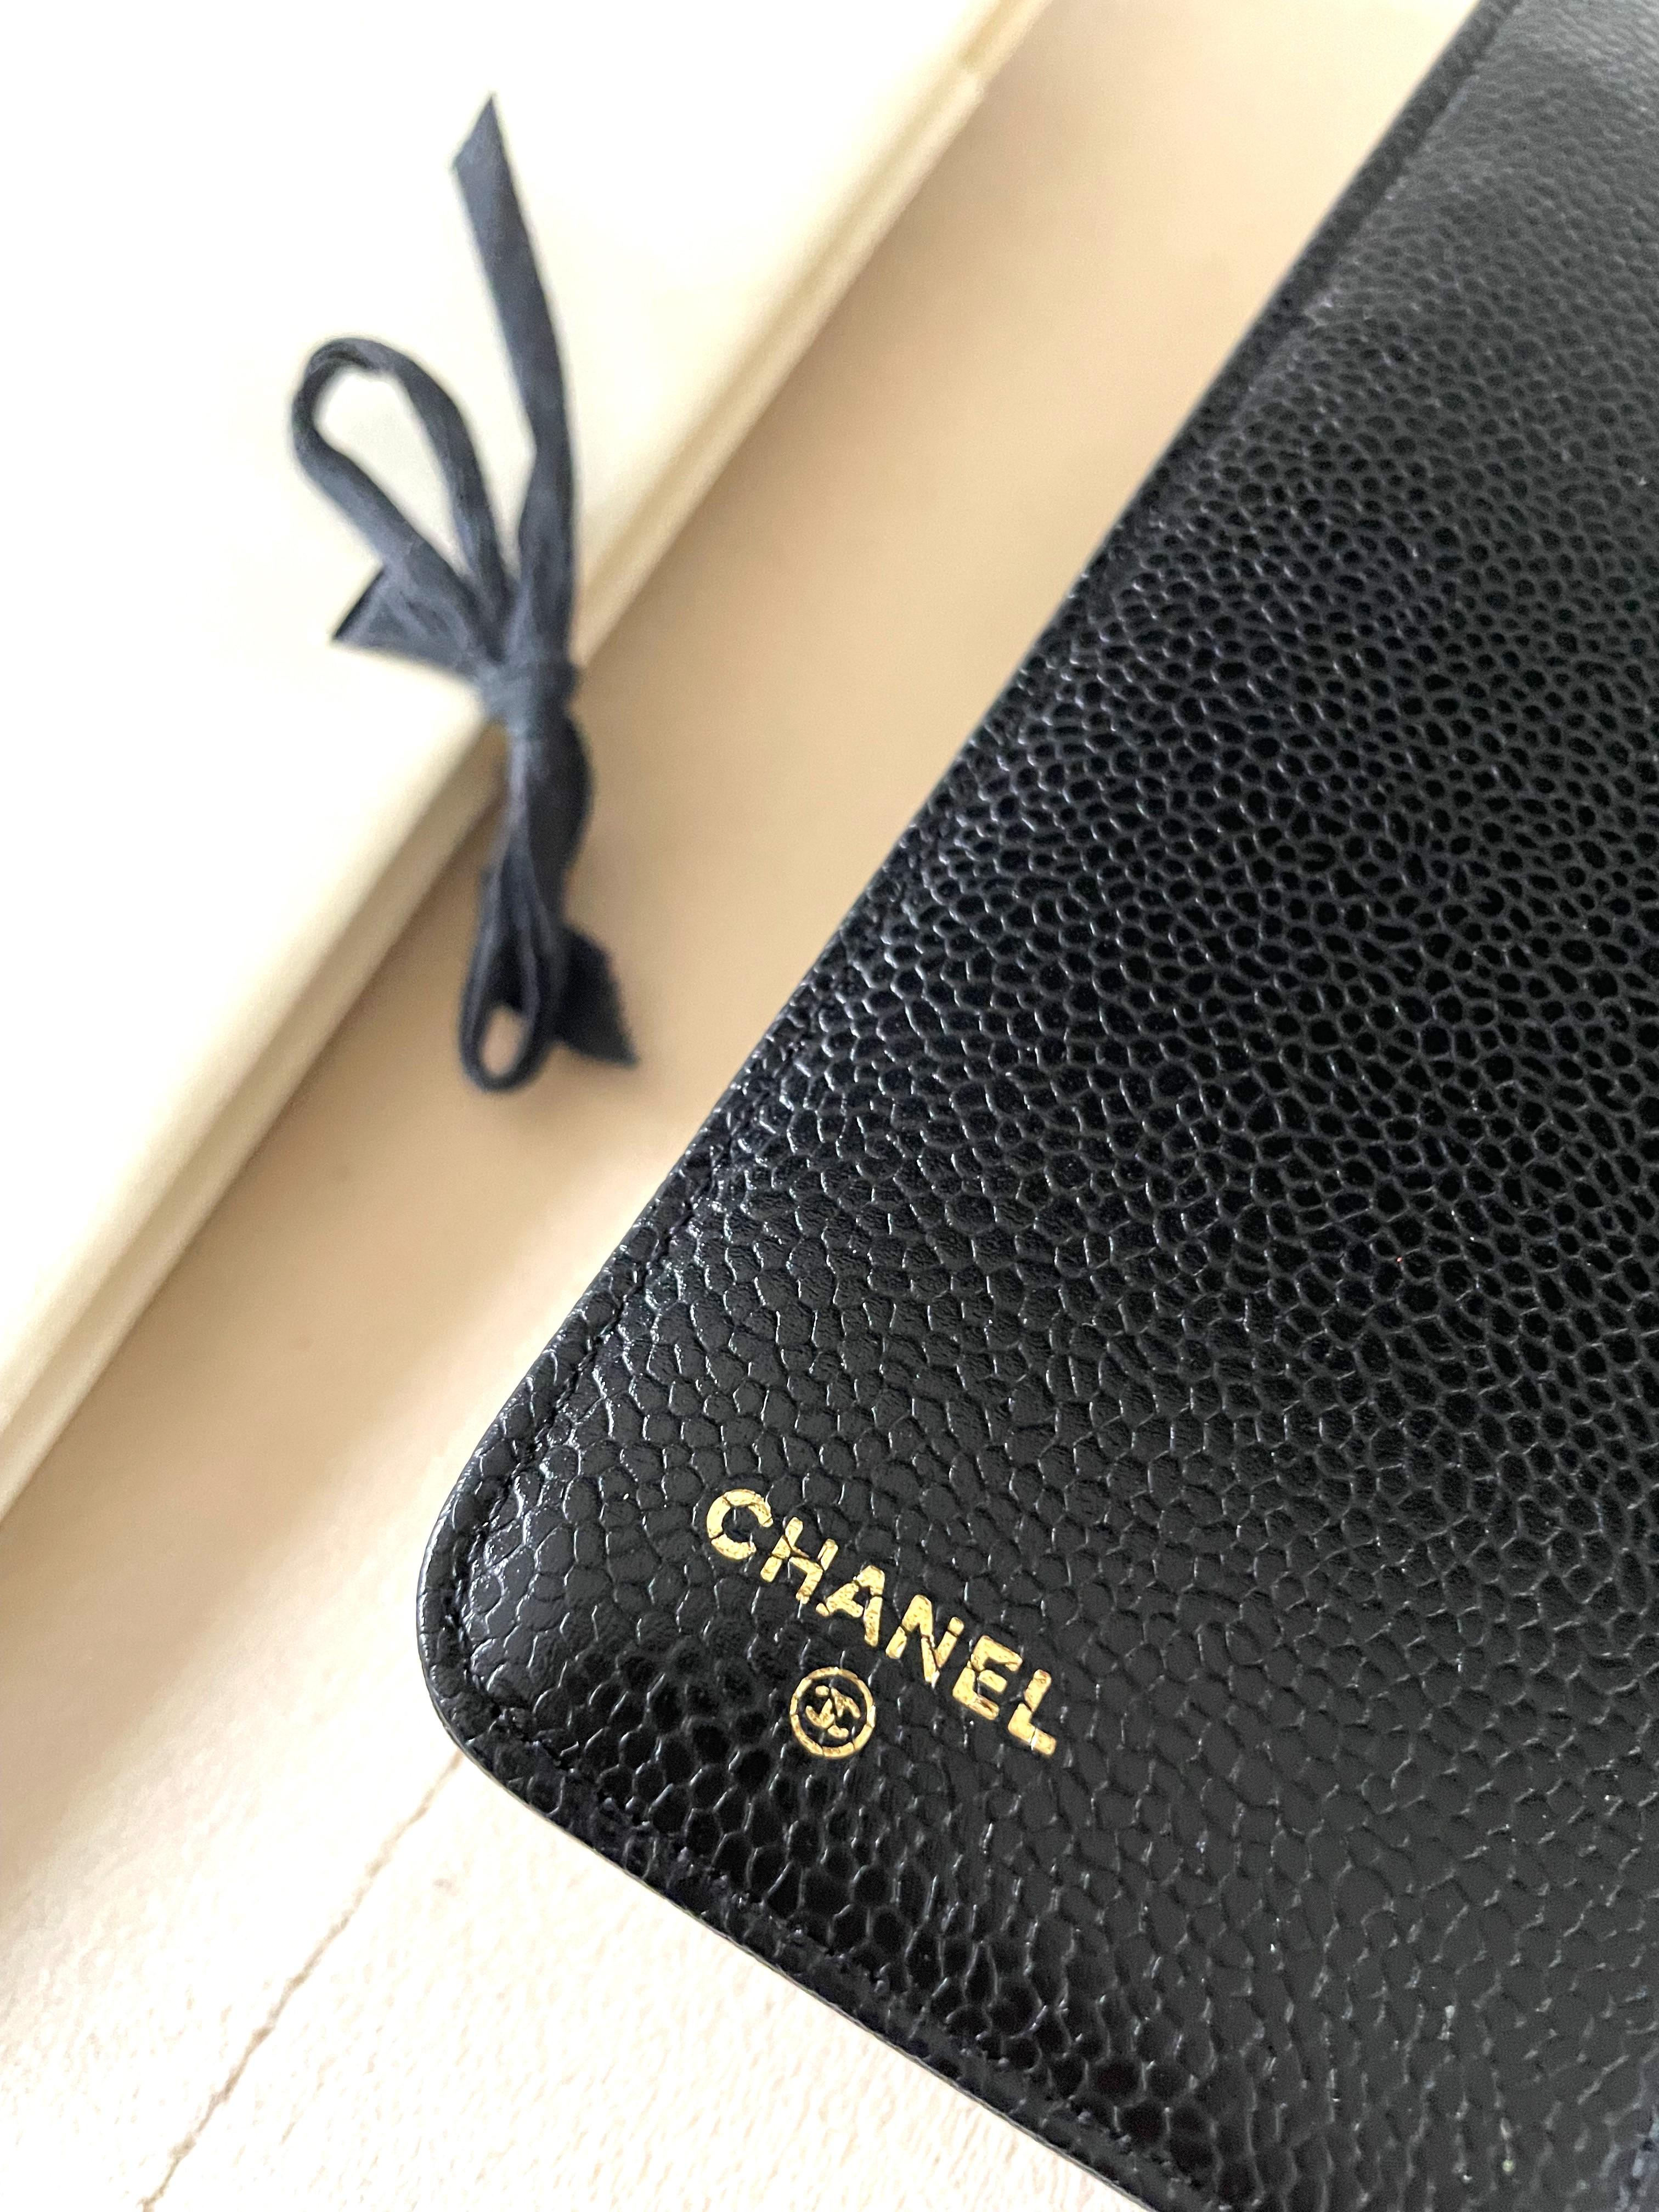 Women's or Men's Chanel Black Caviar Leather Agenda Cover Filofax  For Sale